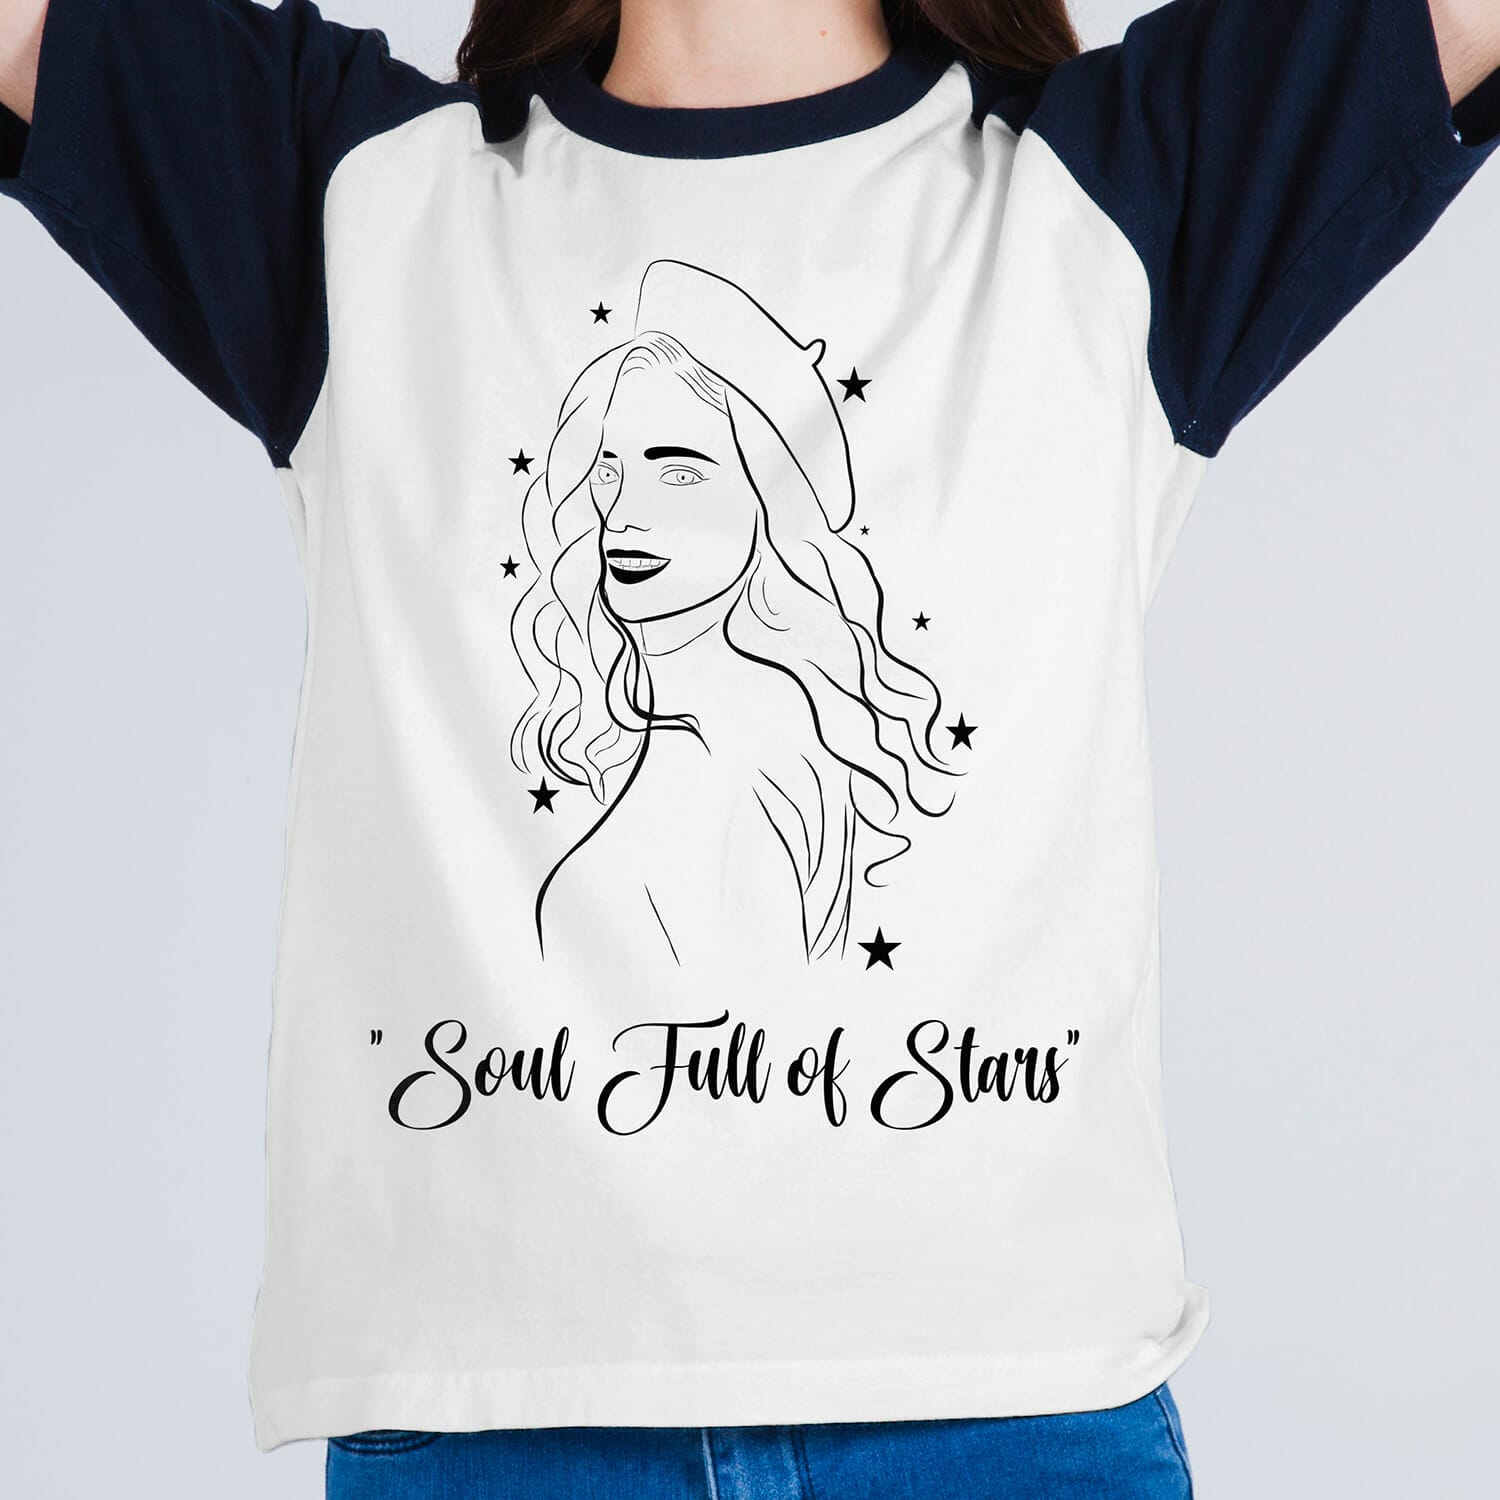 Soul full of stars T-shirt design For Women